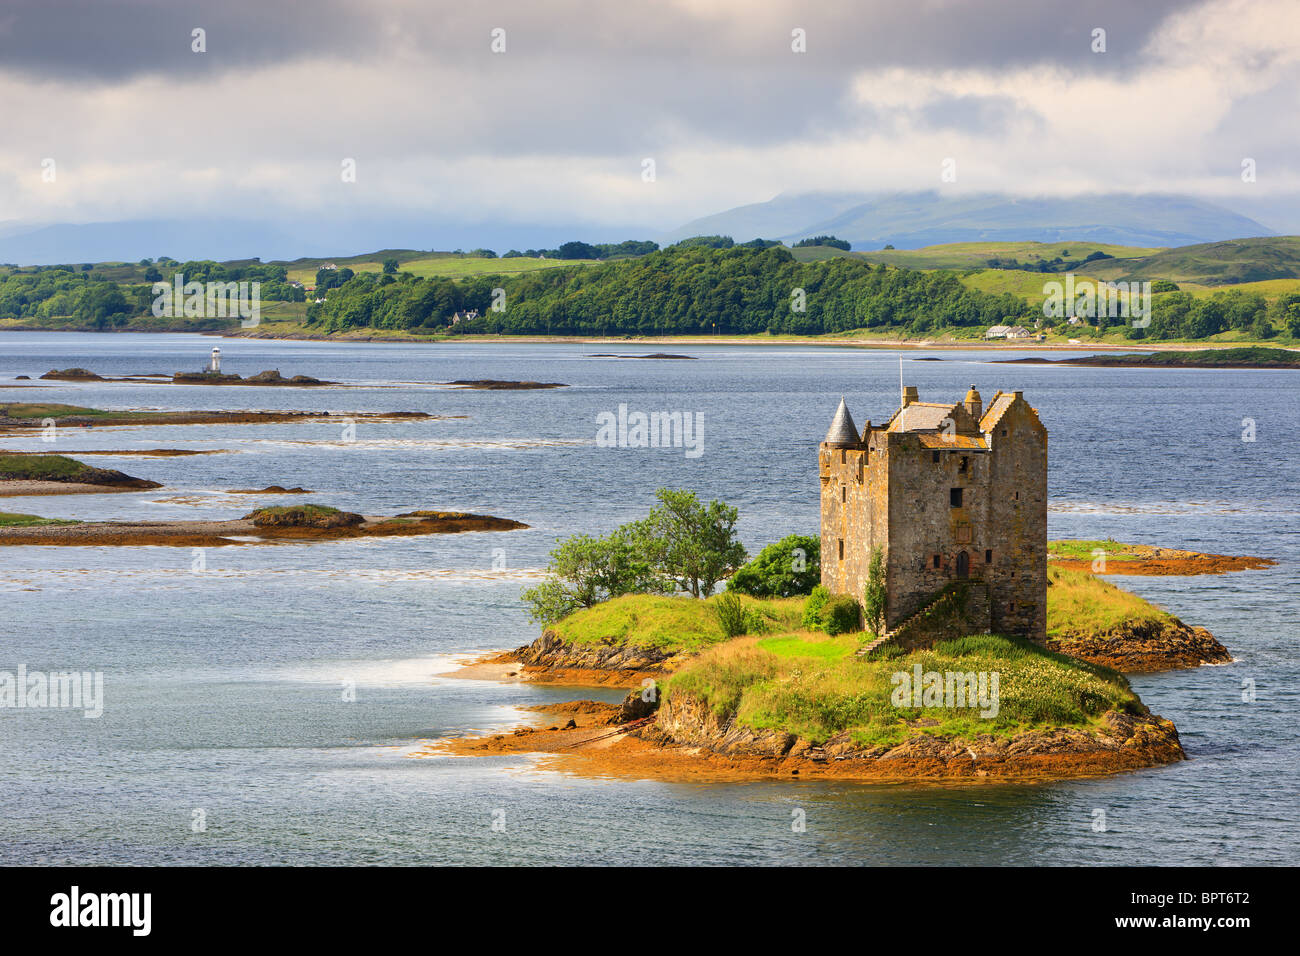 Castle Stalker ist eine viergeschossige Wohnturm oder halten Sie malerisch auf einem Gezeiten-Inselchen auf Loch Laich, einen Einlass ab Loch Linnhe festlegen Stockfoto